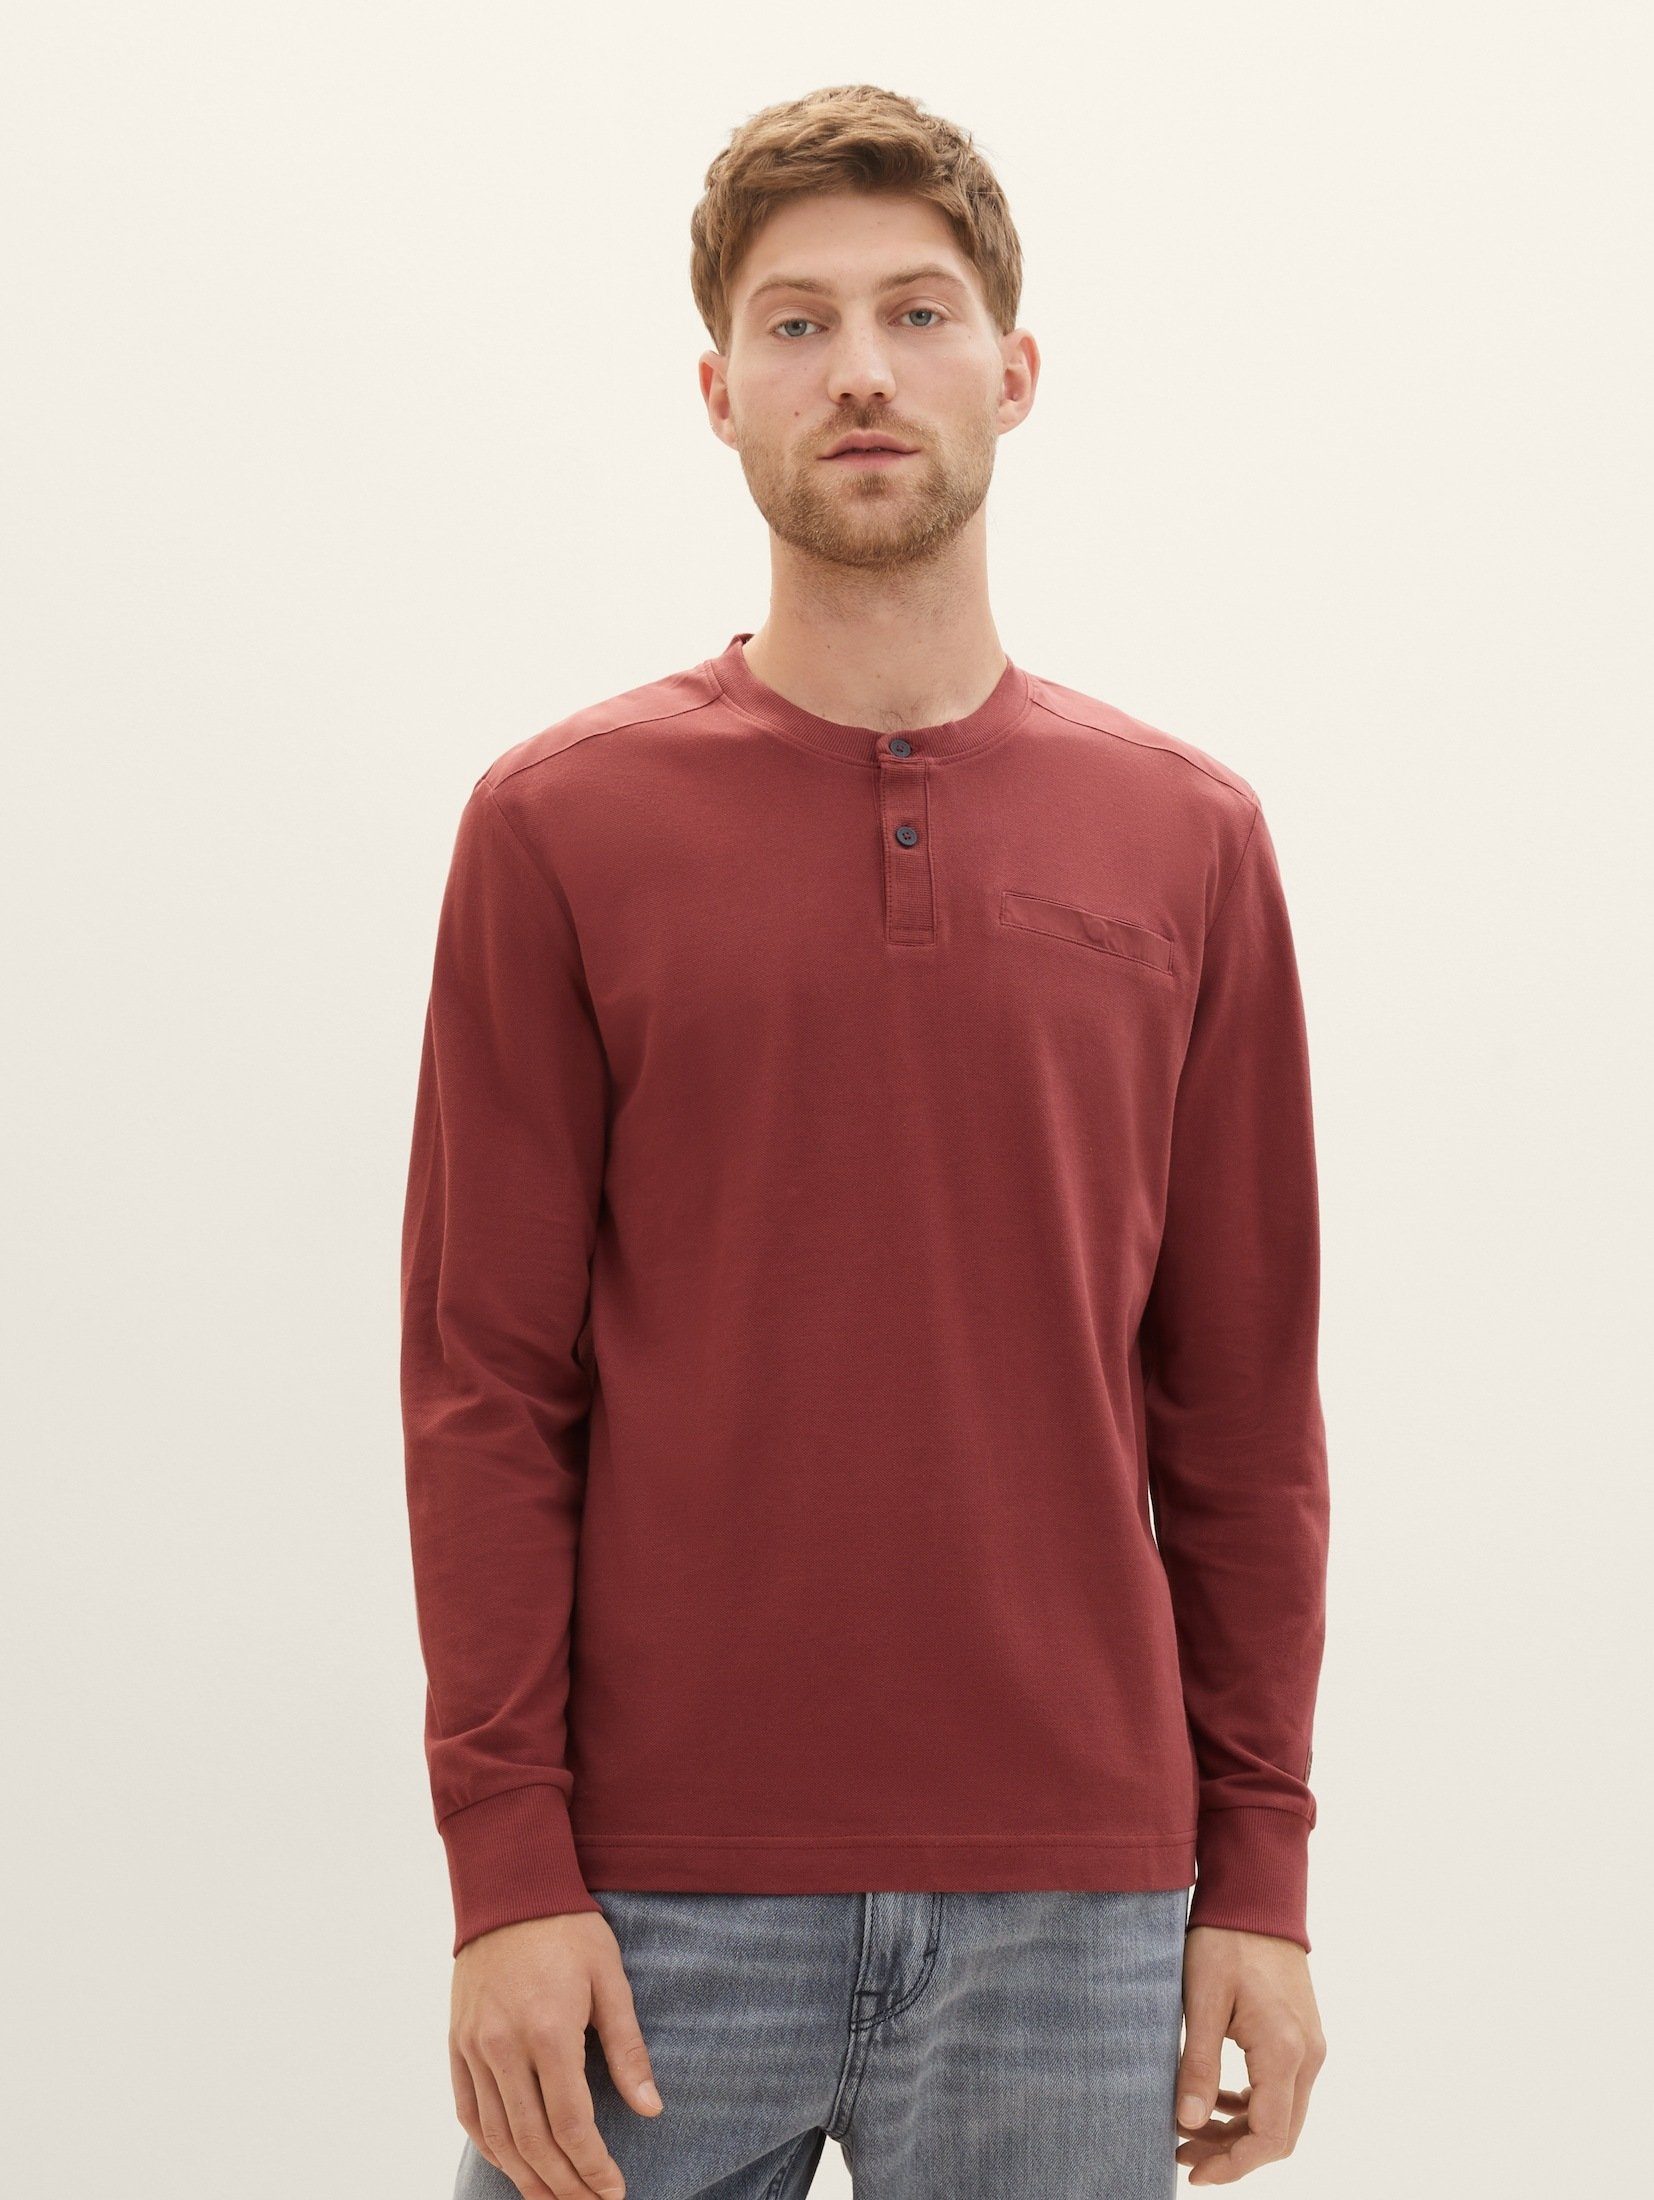 TOM TAILOR T-Shirt Langarmshirt mit Piqué Struktur burned bordeaux red